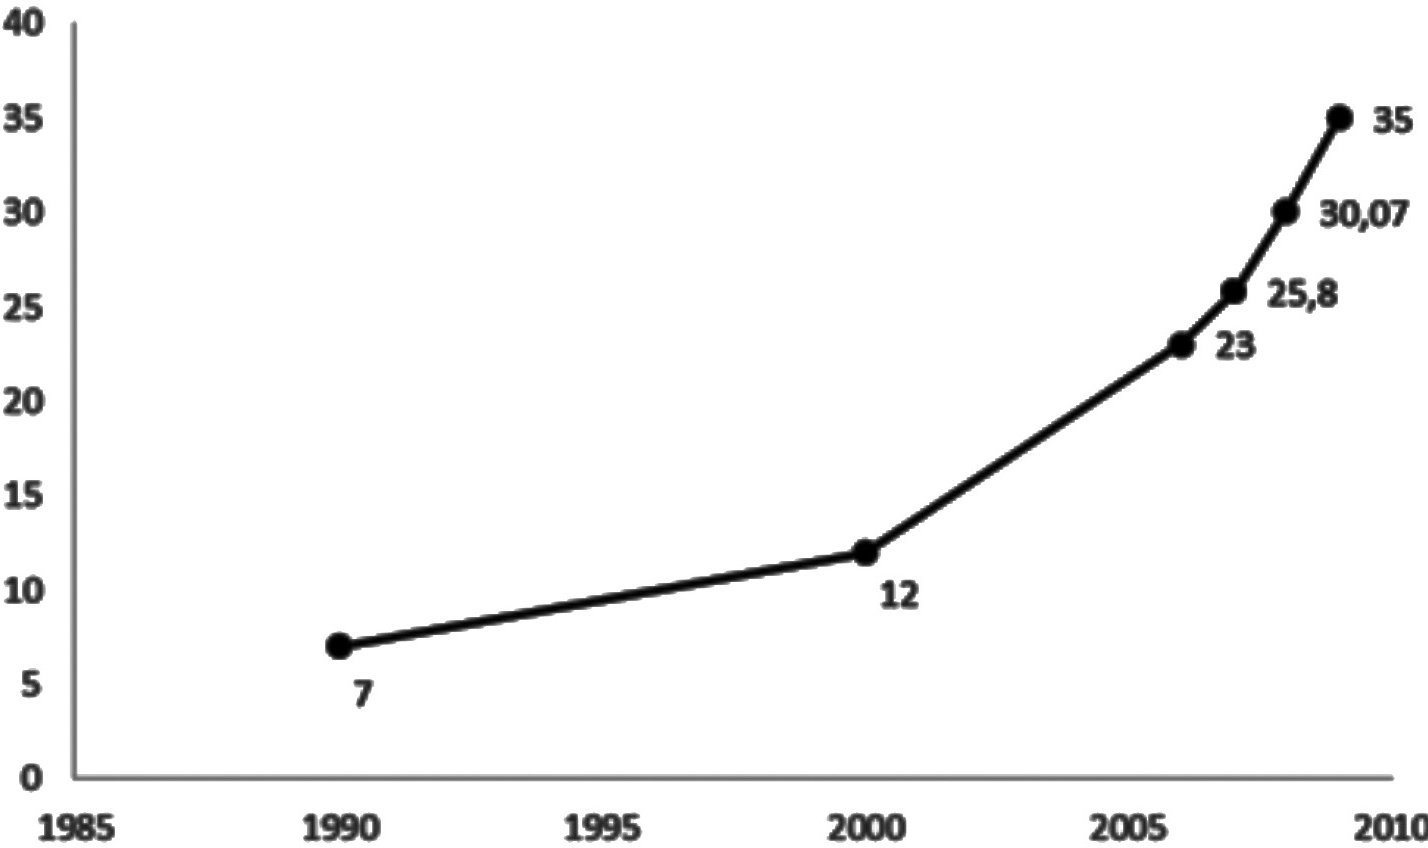 Evolución del consumo per cápita de pollo en Ecuador (kg),
CONAVE (2007).